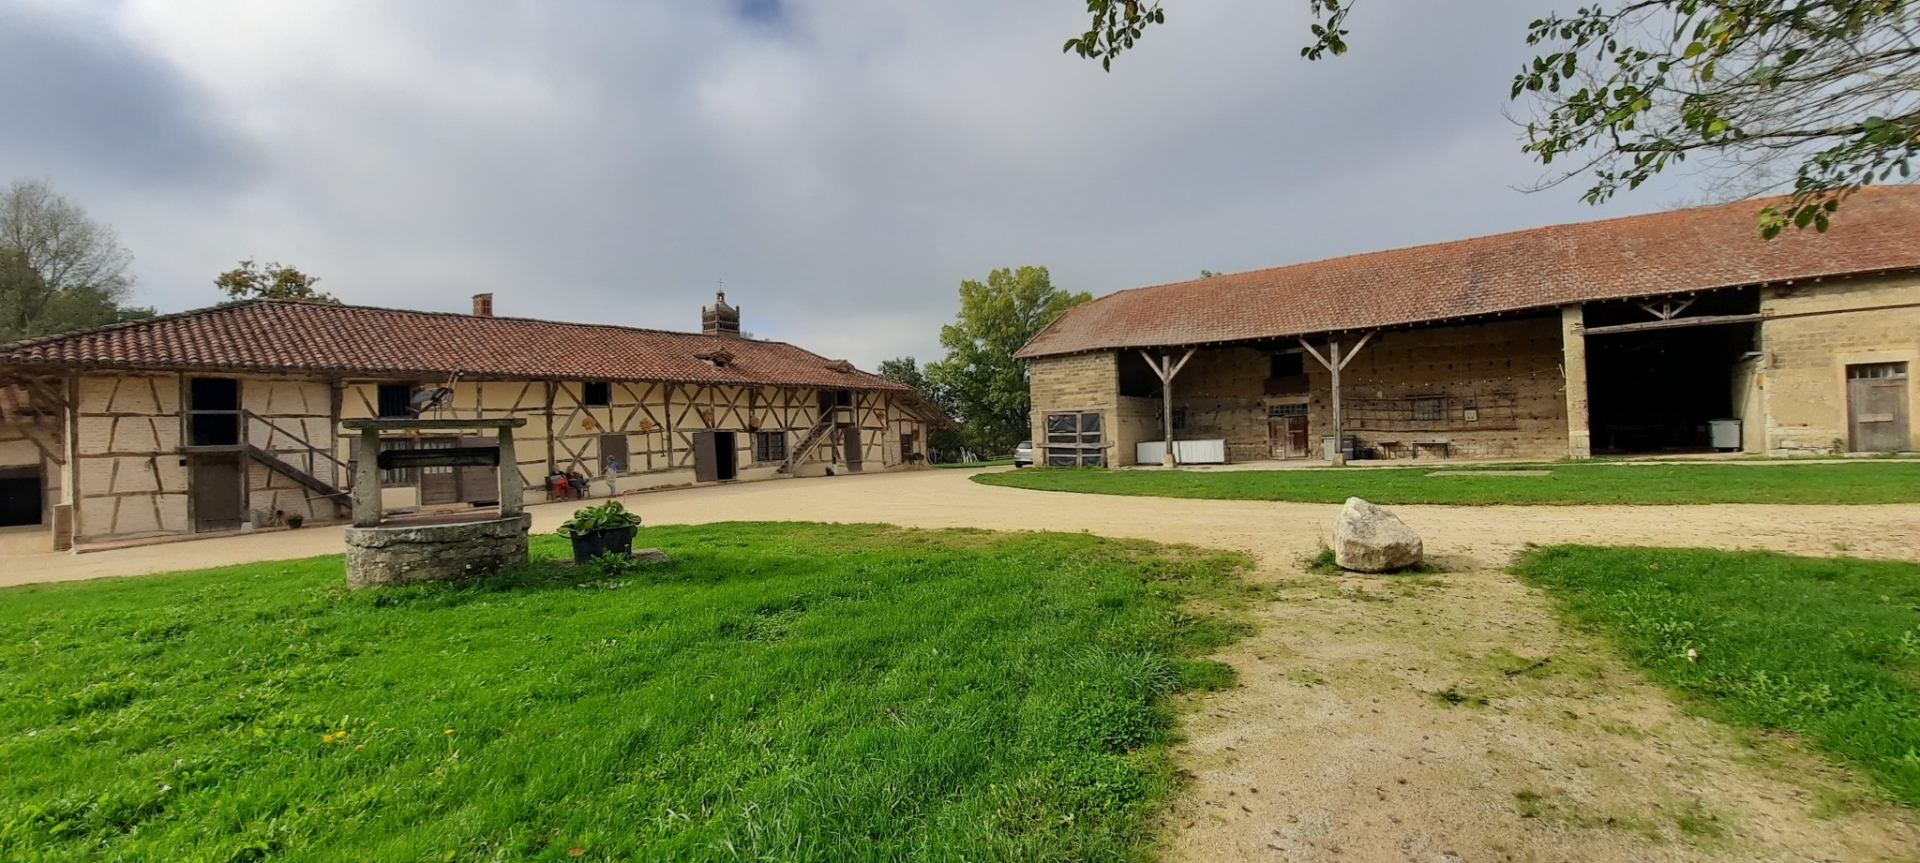 La ferme du Sougey : pôle culturel de la Bresse et ferme vivante